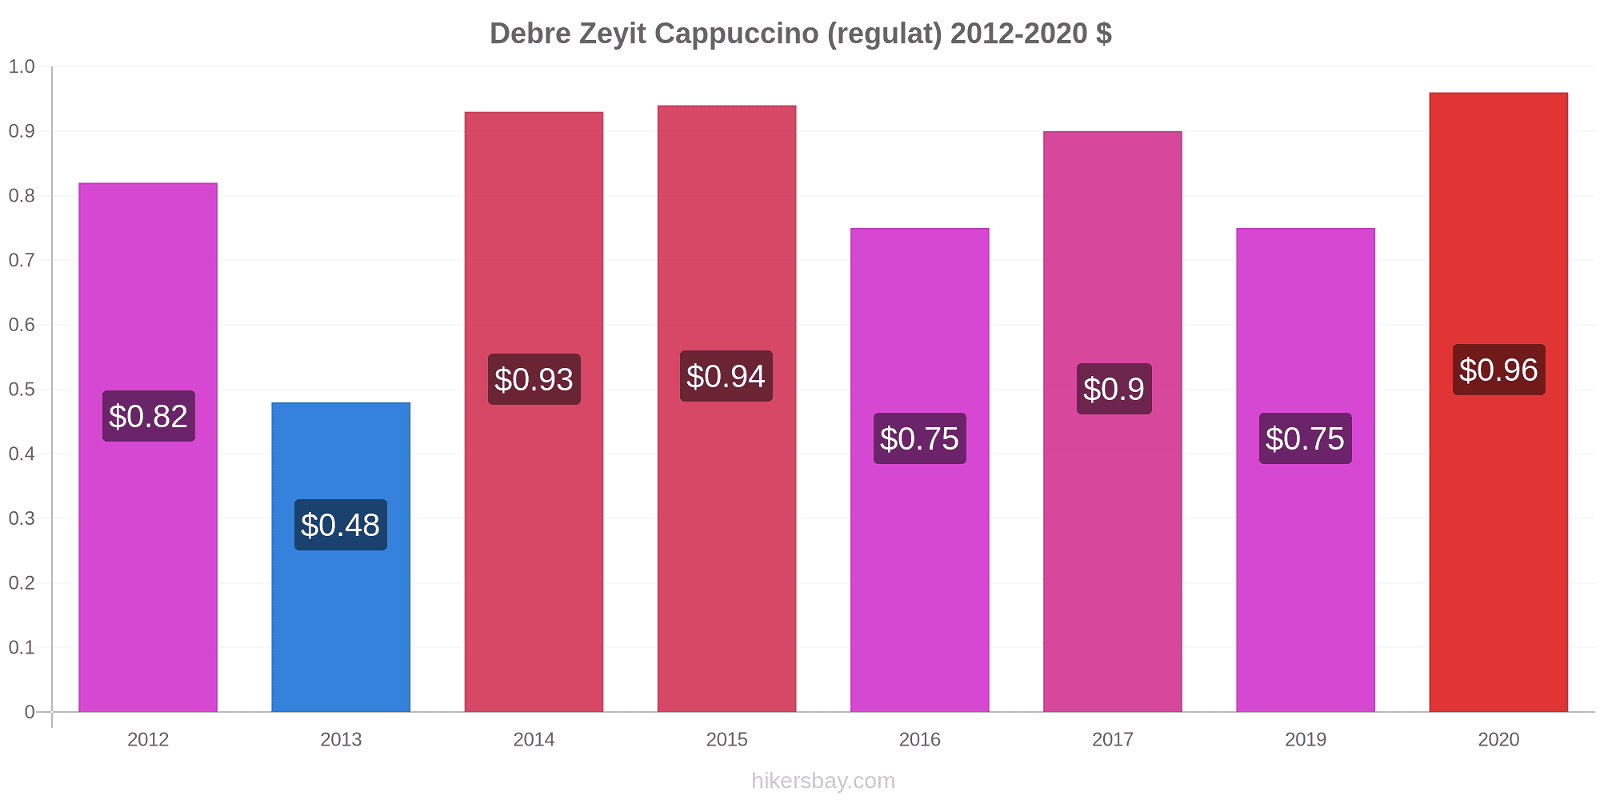 Debre Zeyit modificări de preț Cappuccino (regulat) hikersbay.com